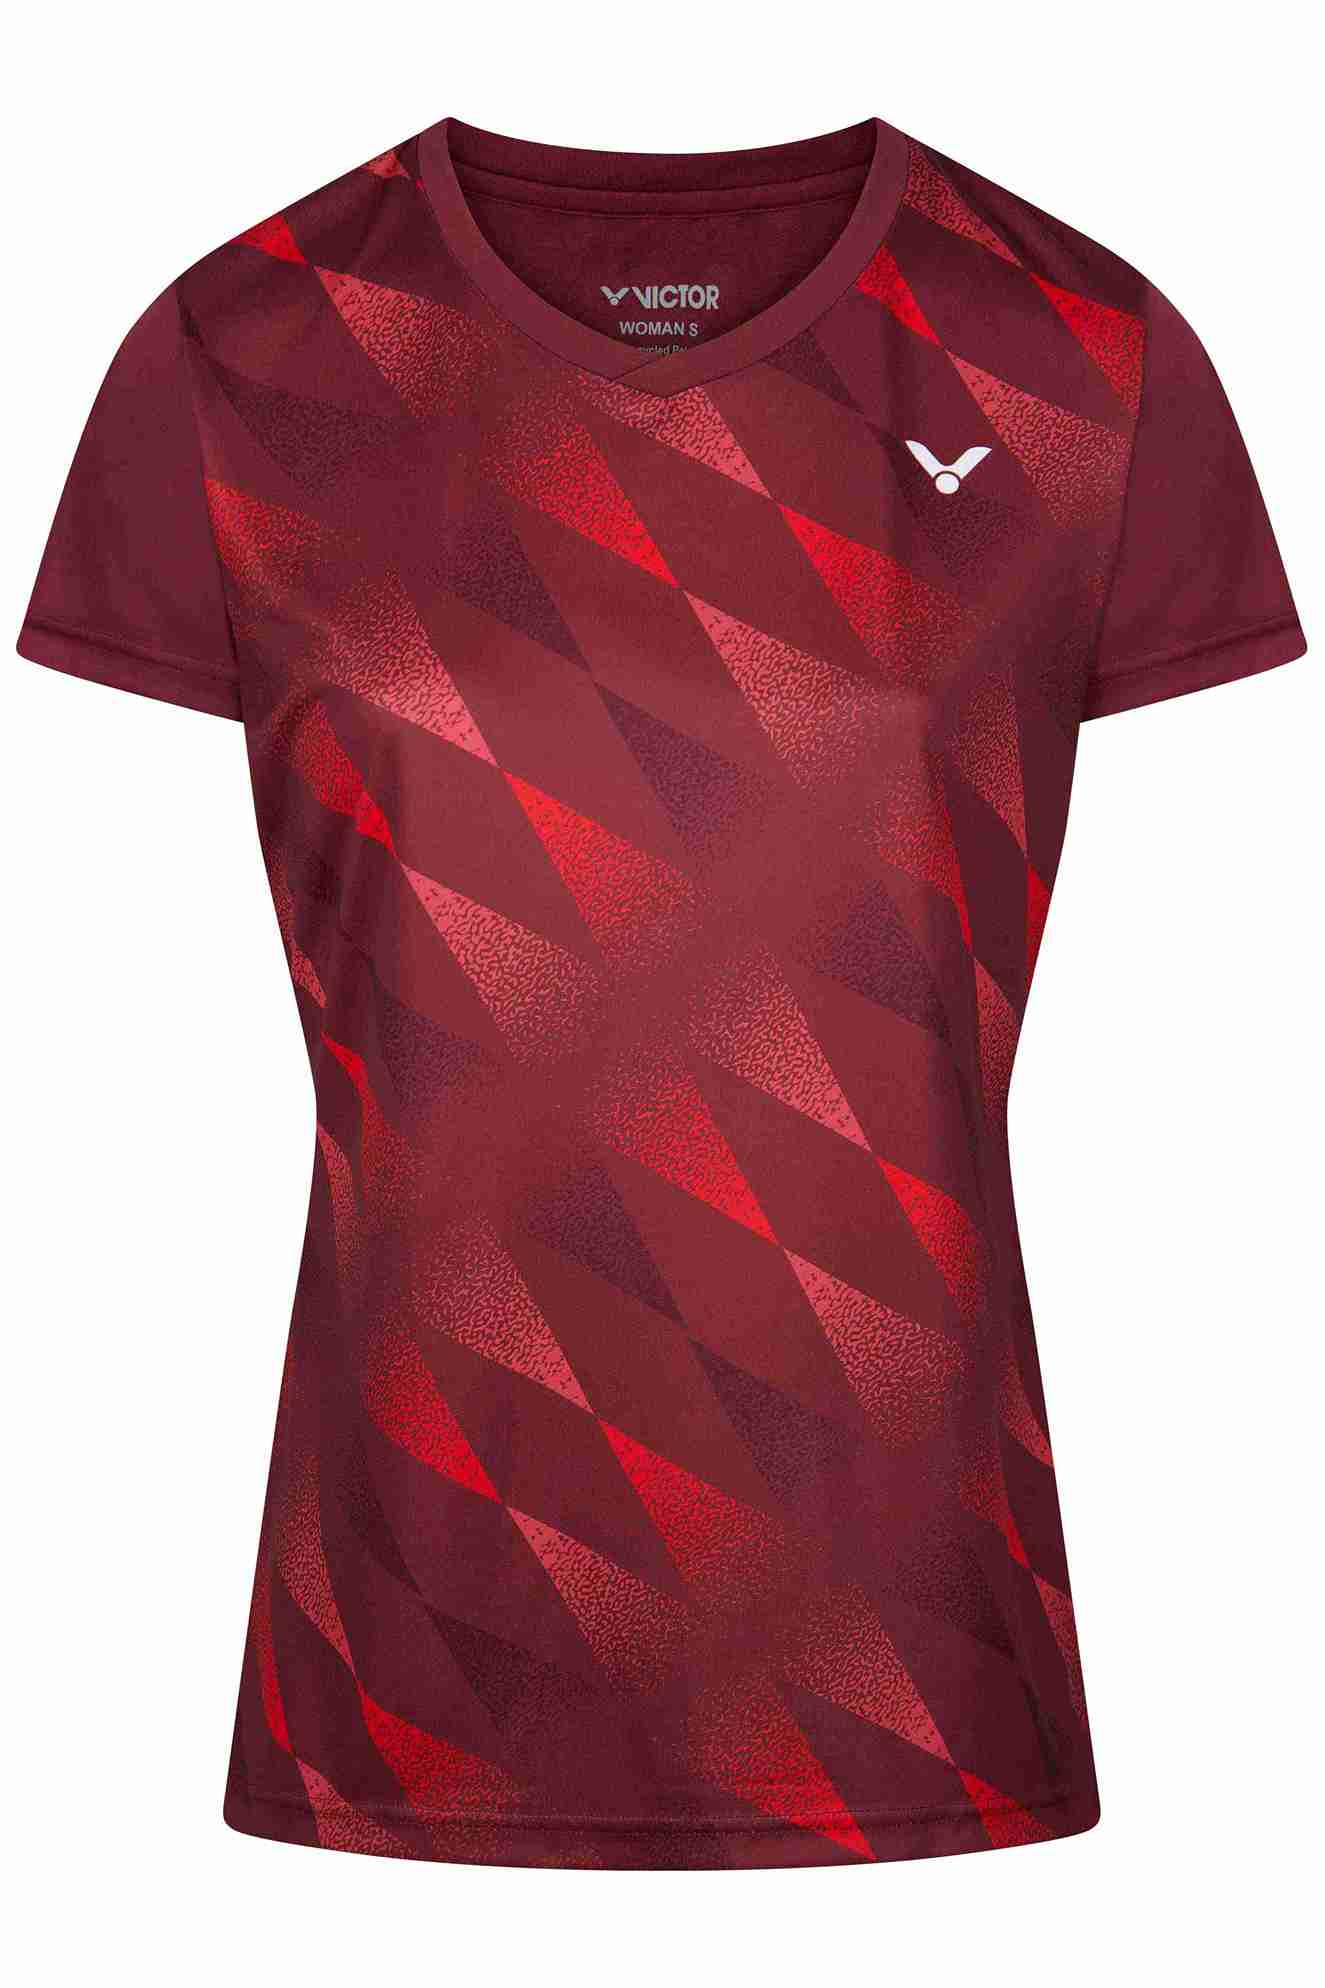 VICTOR T-Shirt T-44102D Women - Rot